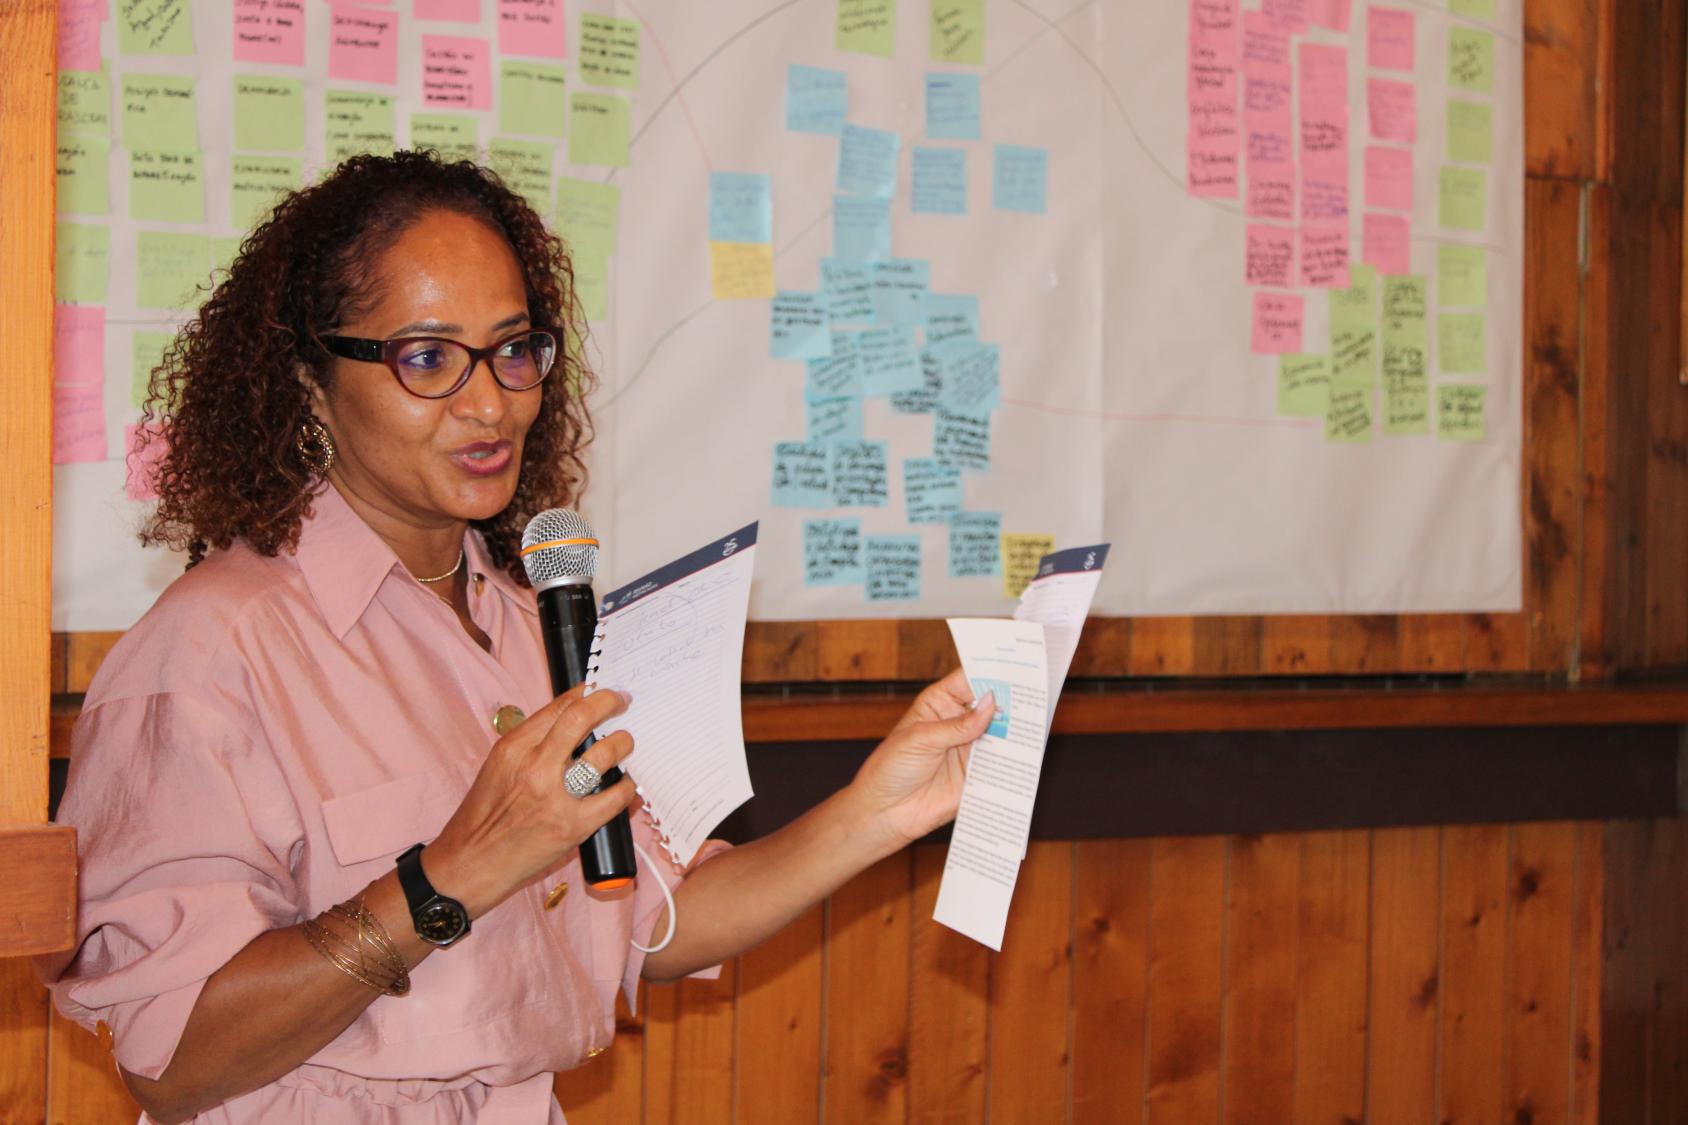 Adelaide Ribeiro, Oficial de Juventud de la Oficina Conjunta PNUD-UNICEF-UNFPA, presenta las hipótesis, los riesgos y las soluciones de su grupo de trabajo.